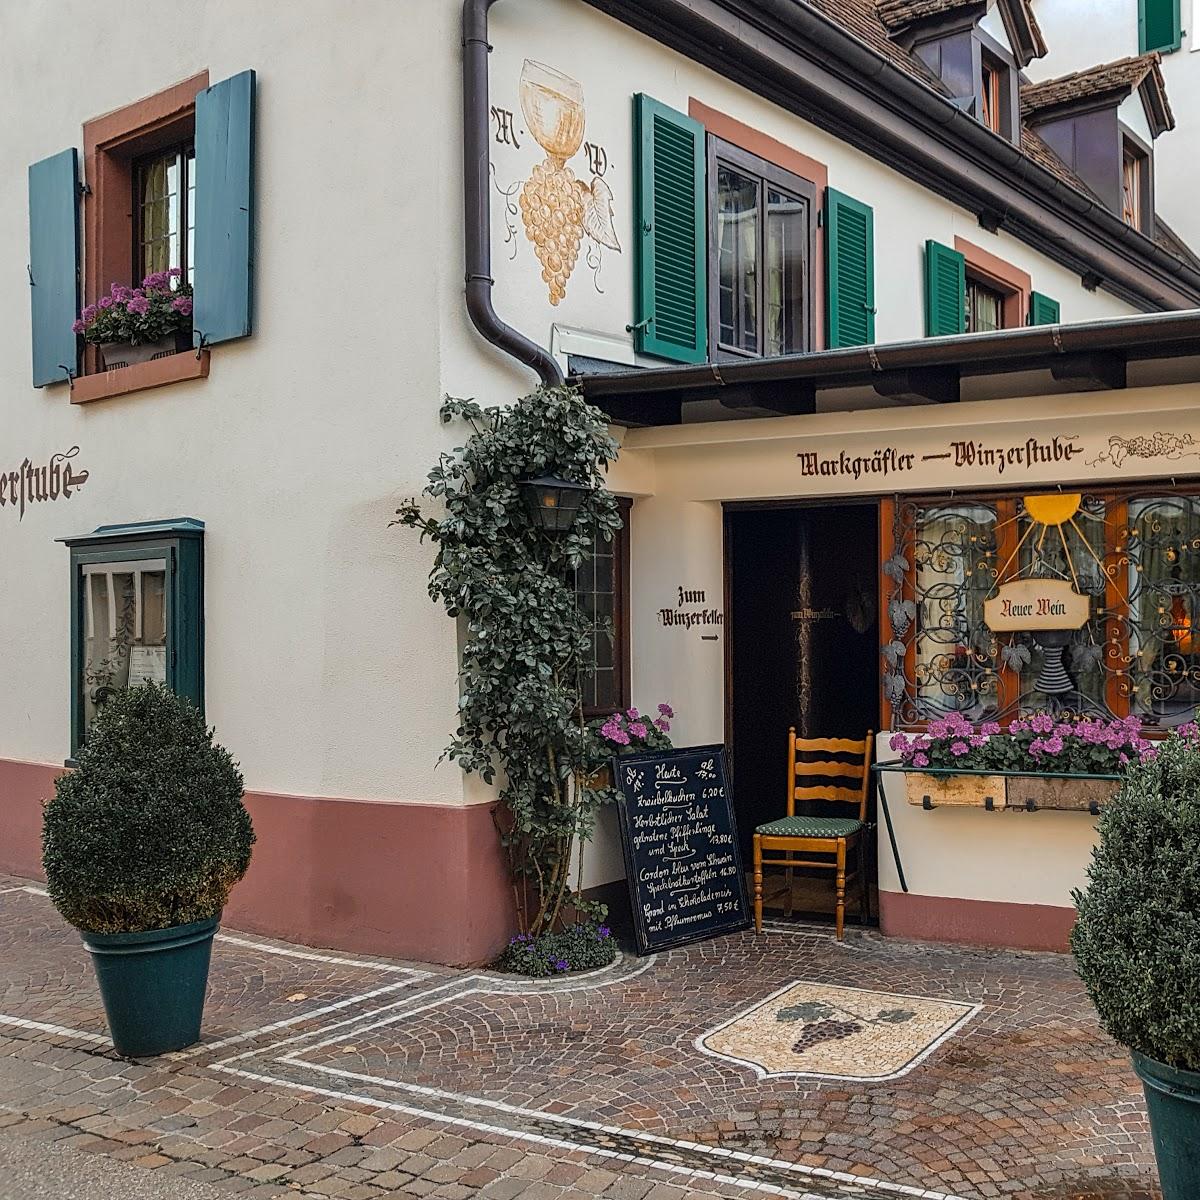 Restaurant "Markgräfler Winzerstube" in  Badenweiler